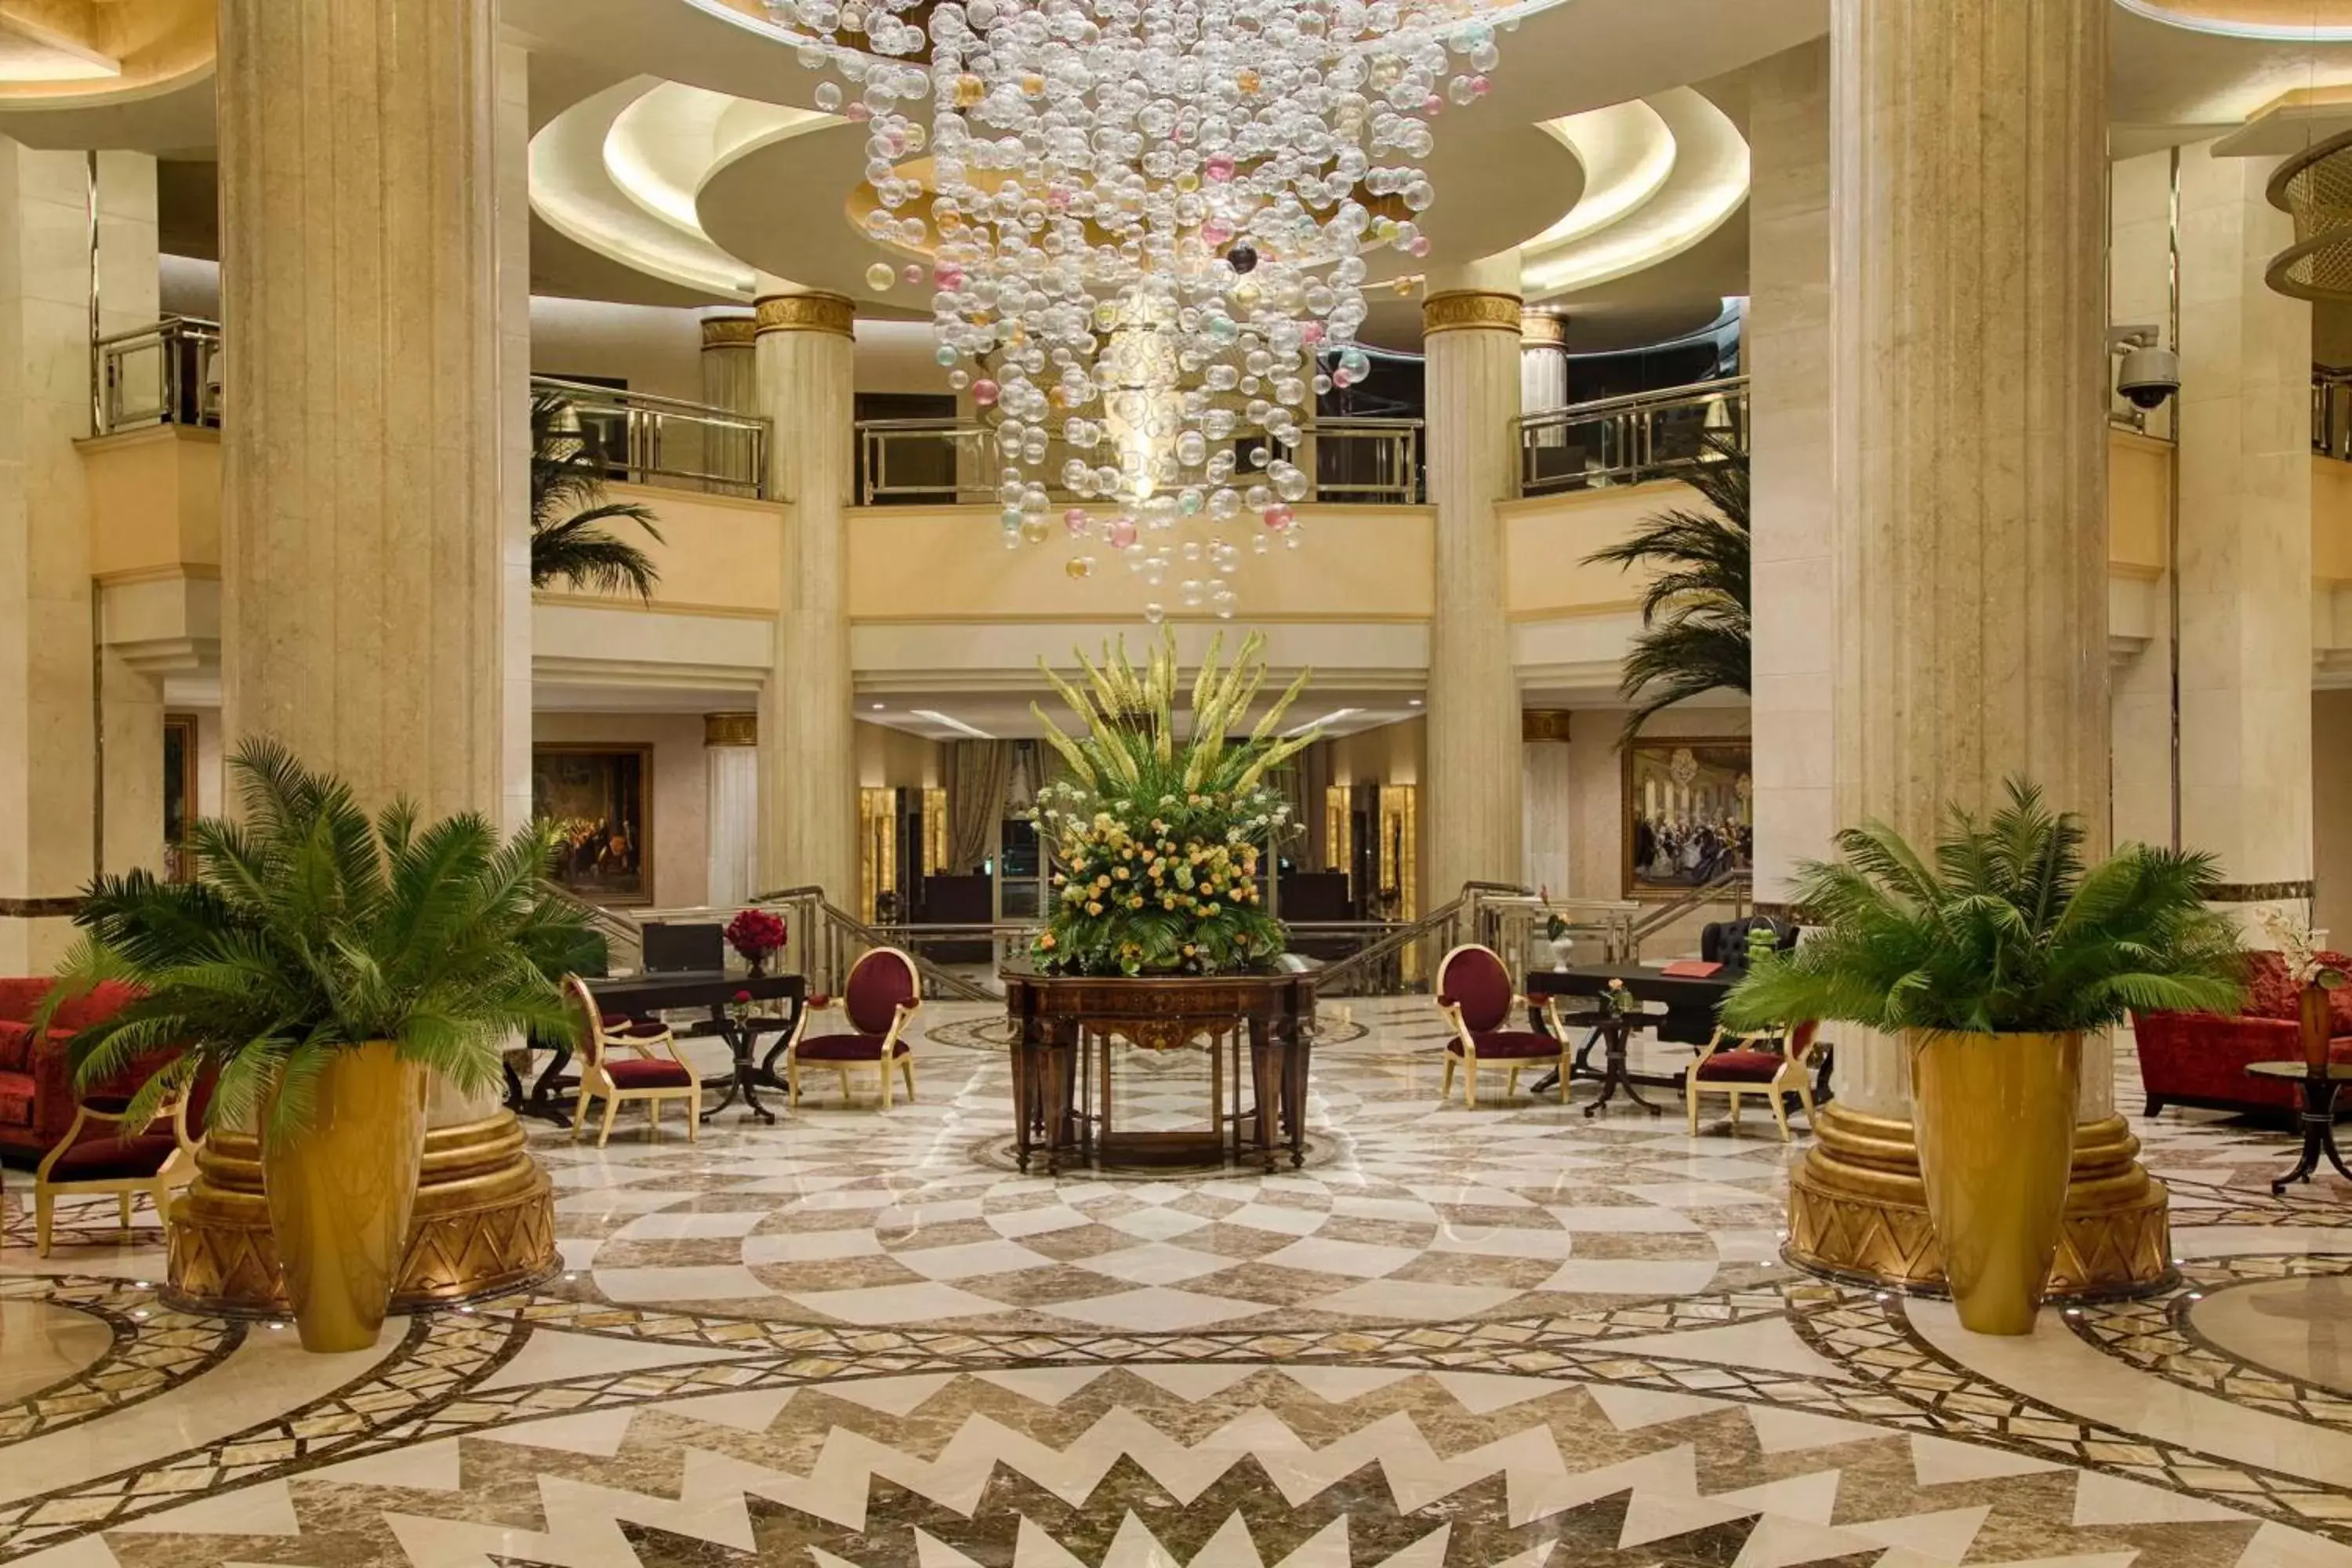 Lobby or reception, Lobby/Reception in Royal Maxim Palace Kempinski Cairo